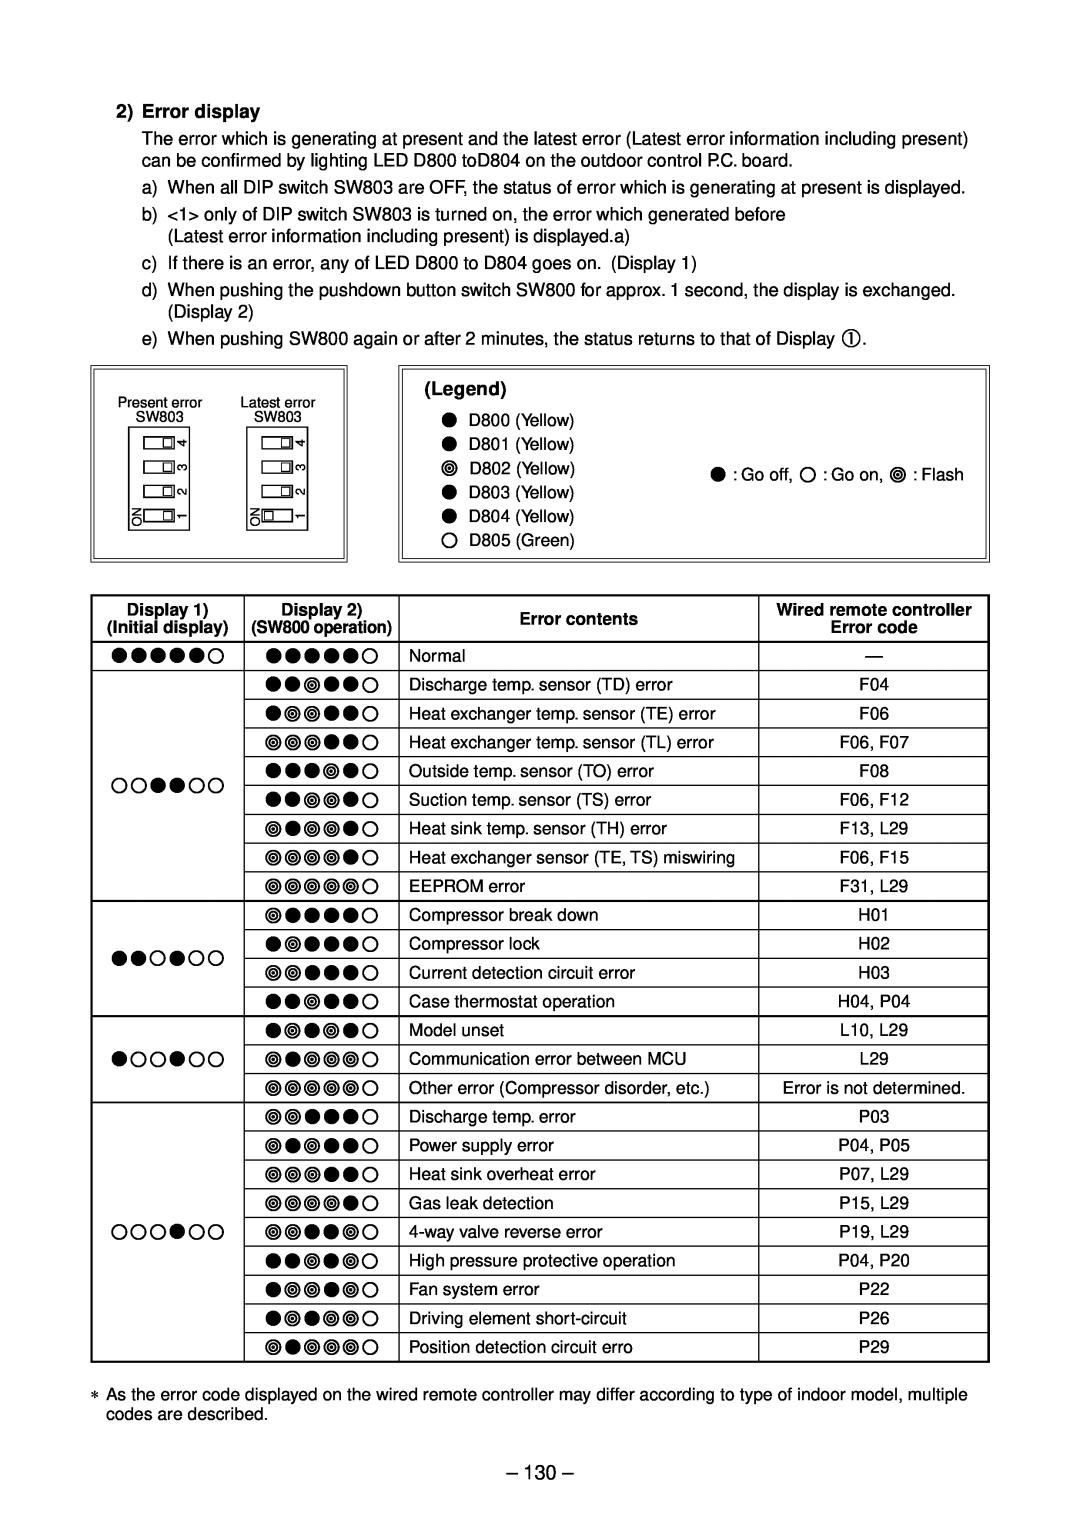 Toshiba RAV-SP564ATZG-E, RAV-SP804ATZG-E, RAV-SP804ATZ-E, RAV-SP804AT-E, RAV-SP564ATZ-E Error display, Error contents 